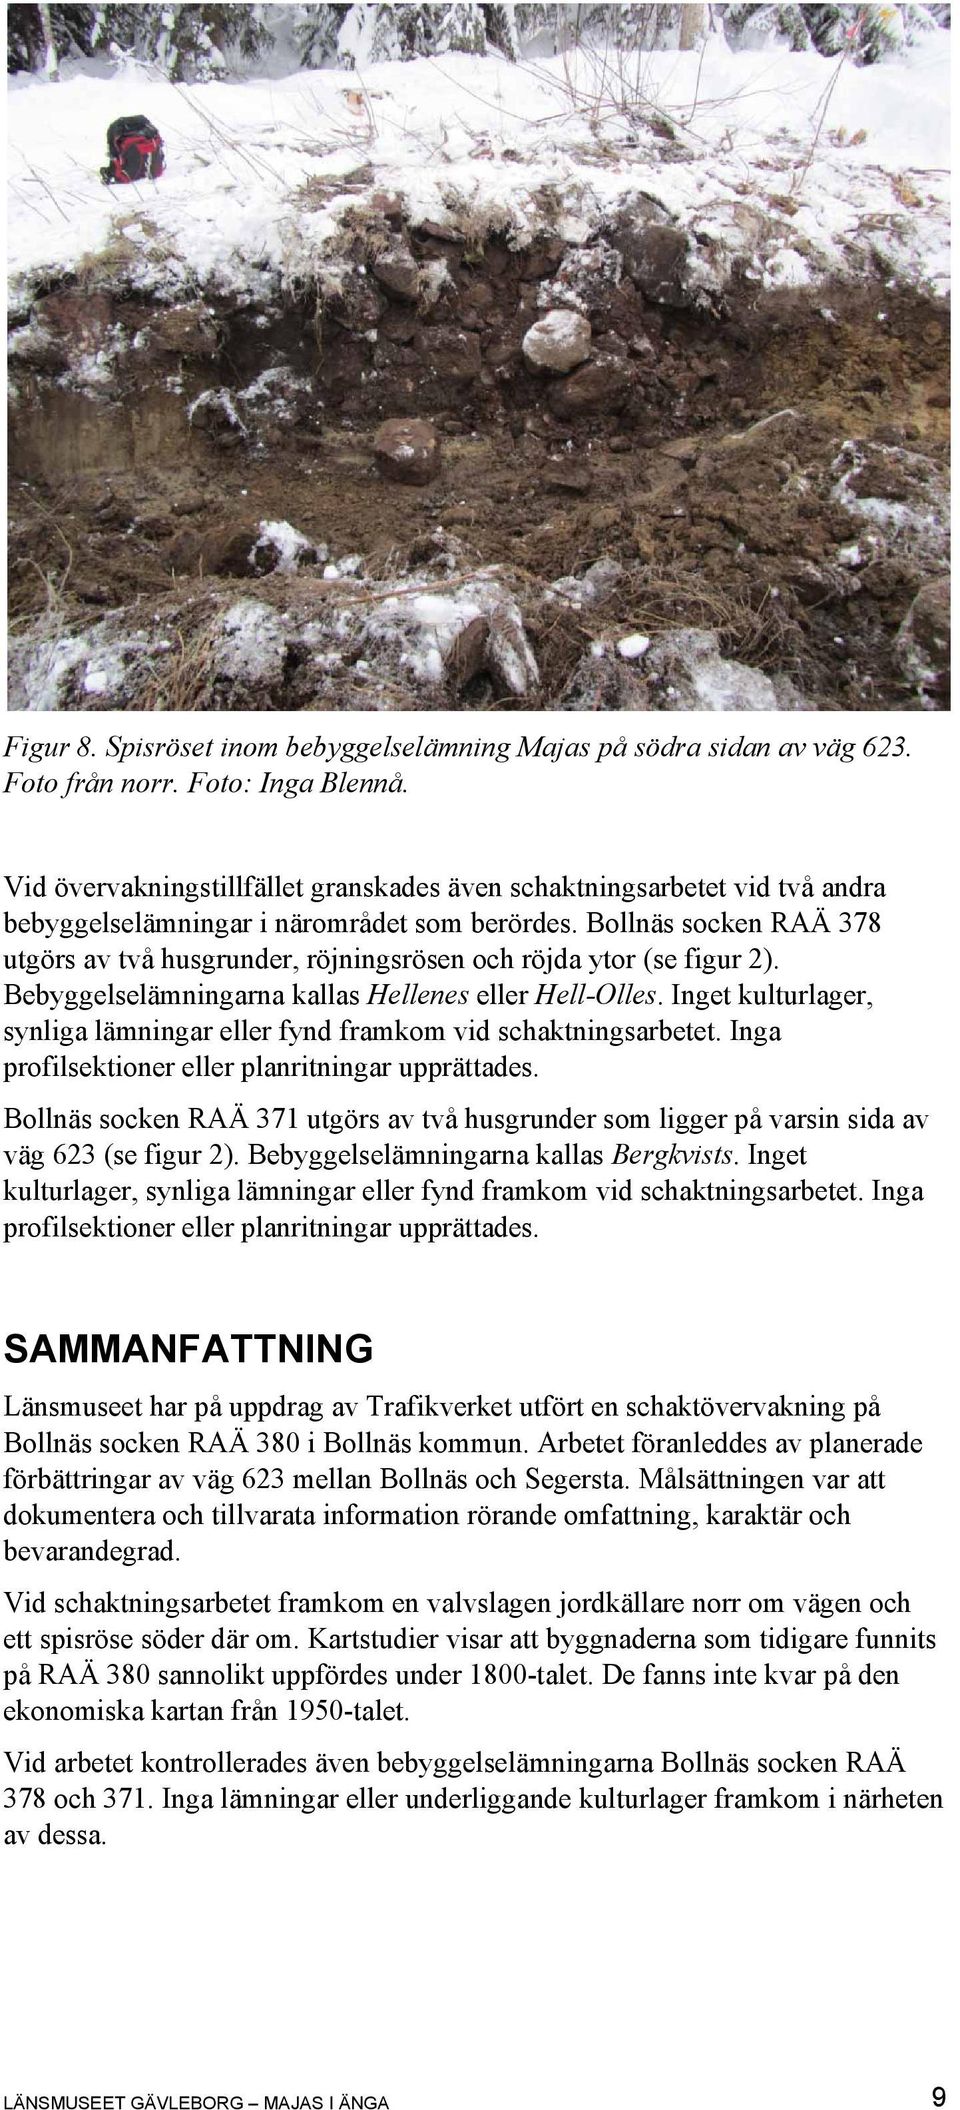 Bollnäs socken RAÄ 378 utgörs av två husgrunder, röjningsrösen och röjda ytor (se figur 2). Bebyggelselämningarna kallas Hellenes eller Hell-Olles.